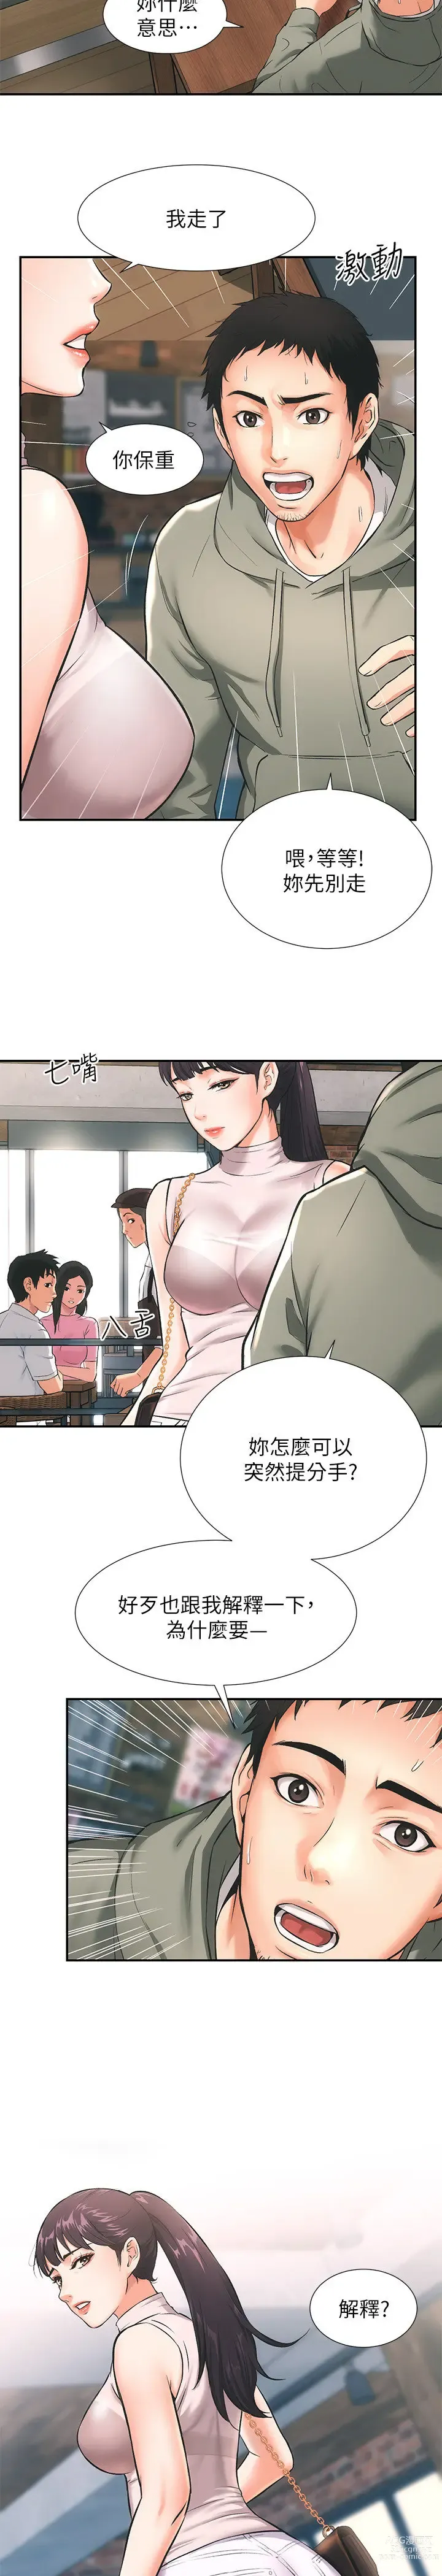 Page 4 of manga 弟妹诊撩室